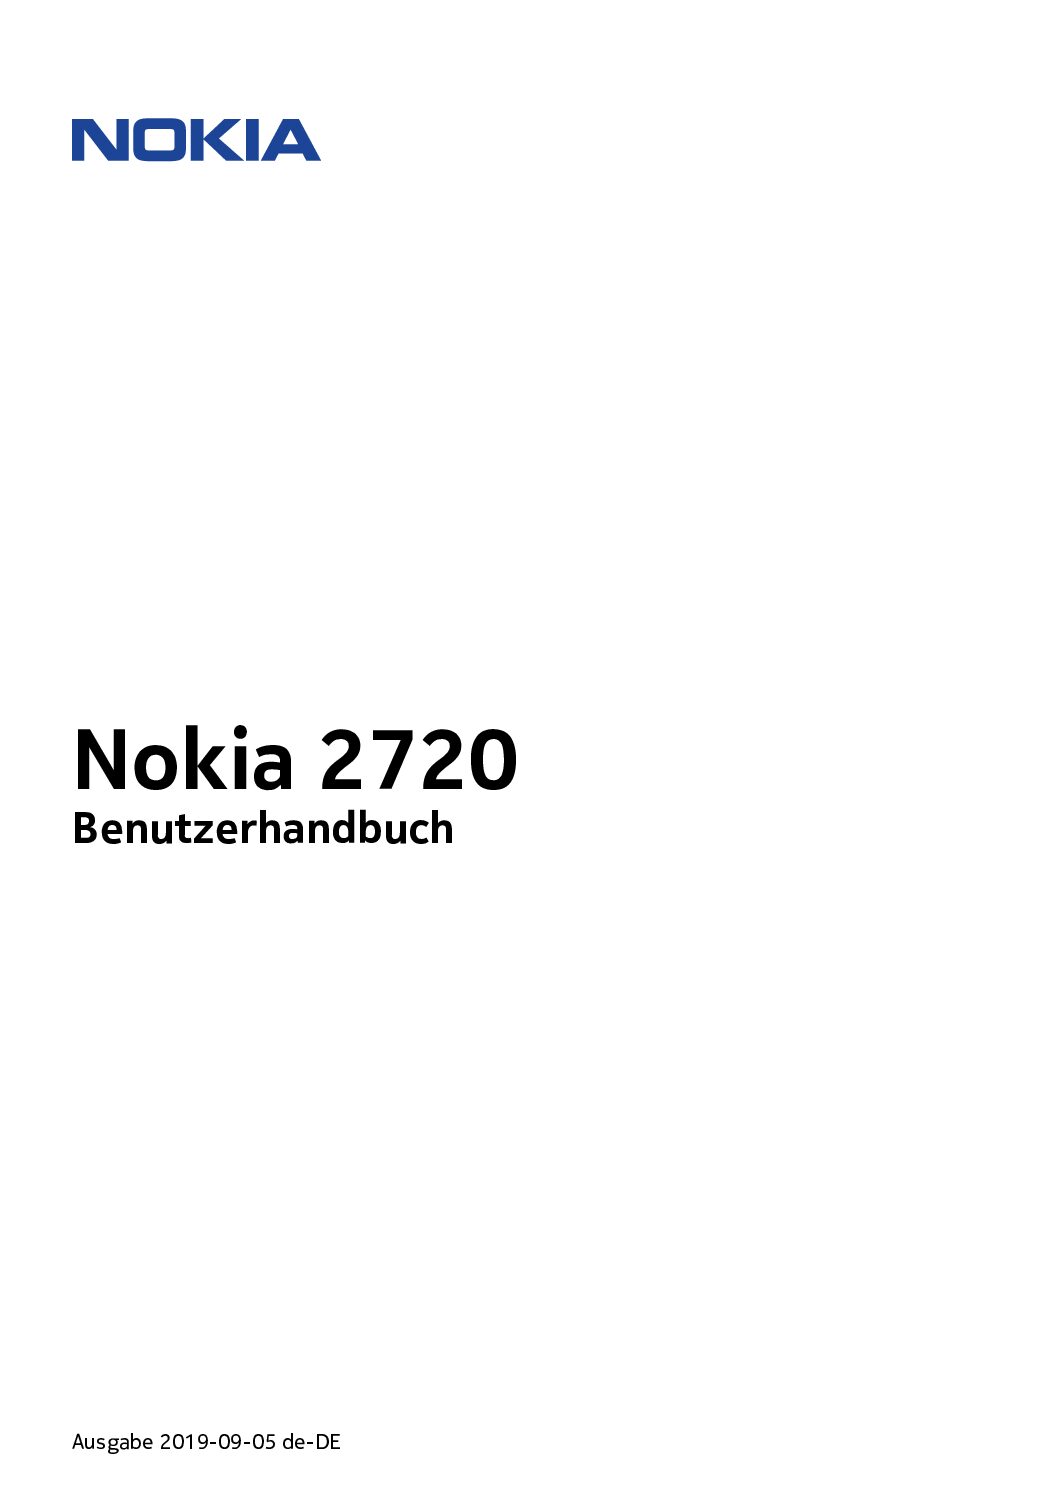 Nokia 2720 Flip Bedienungsanleitung